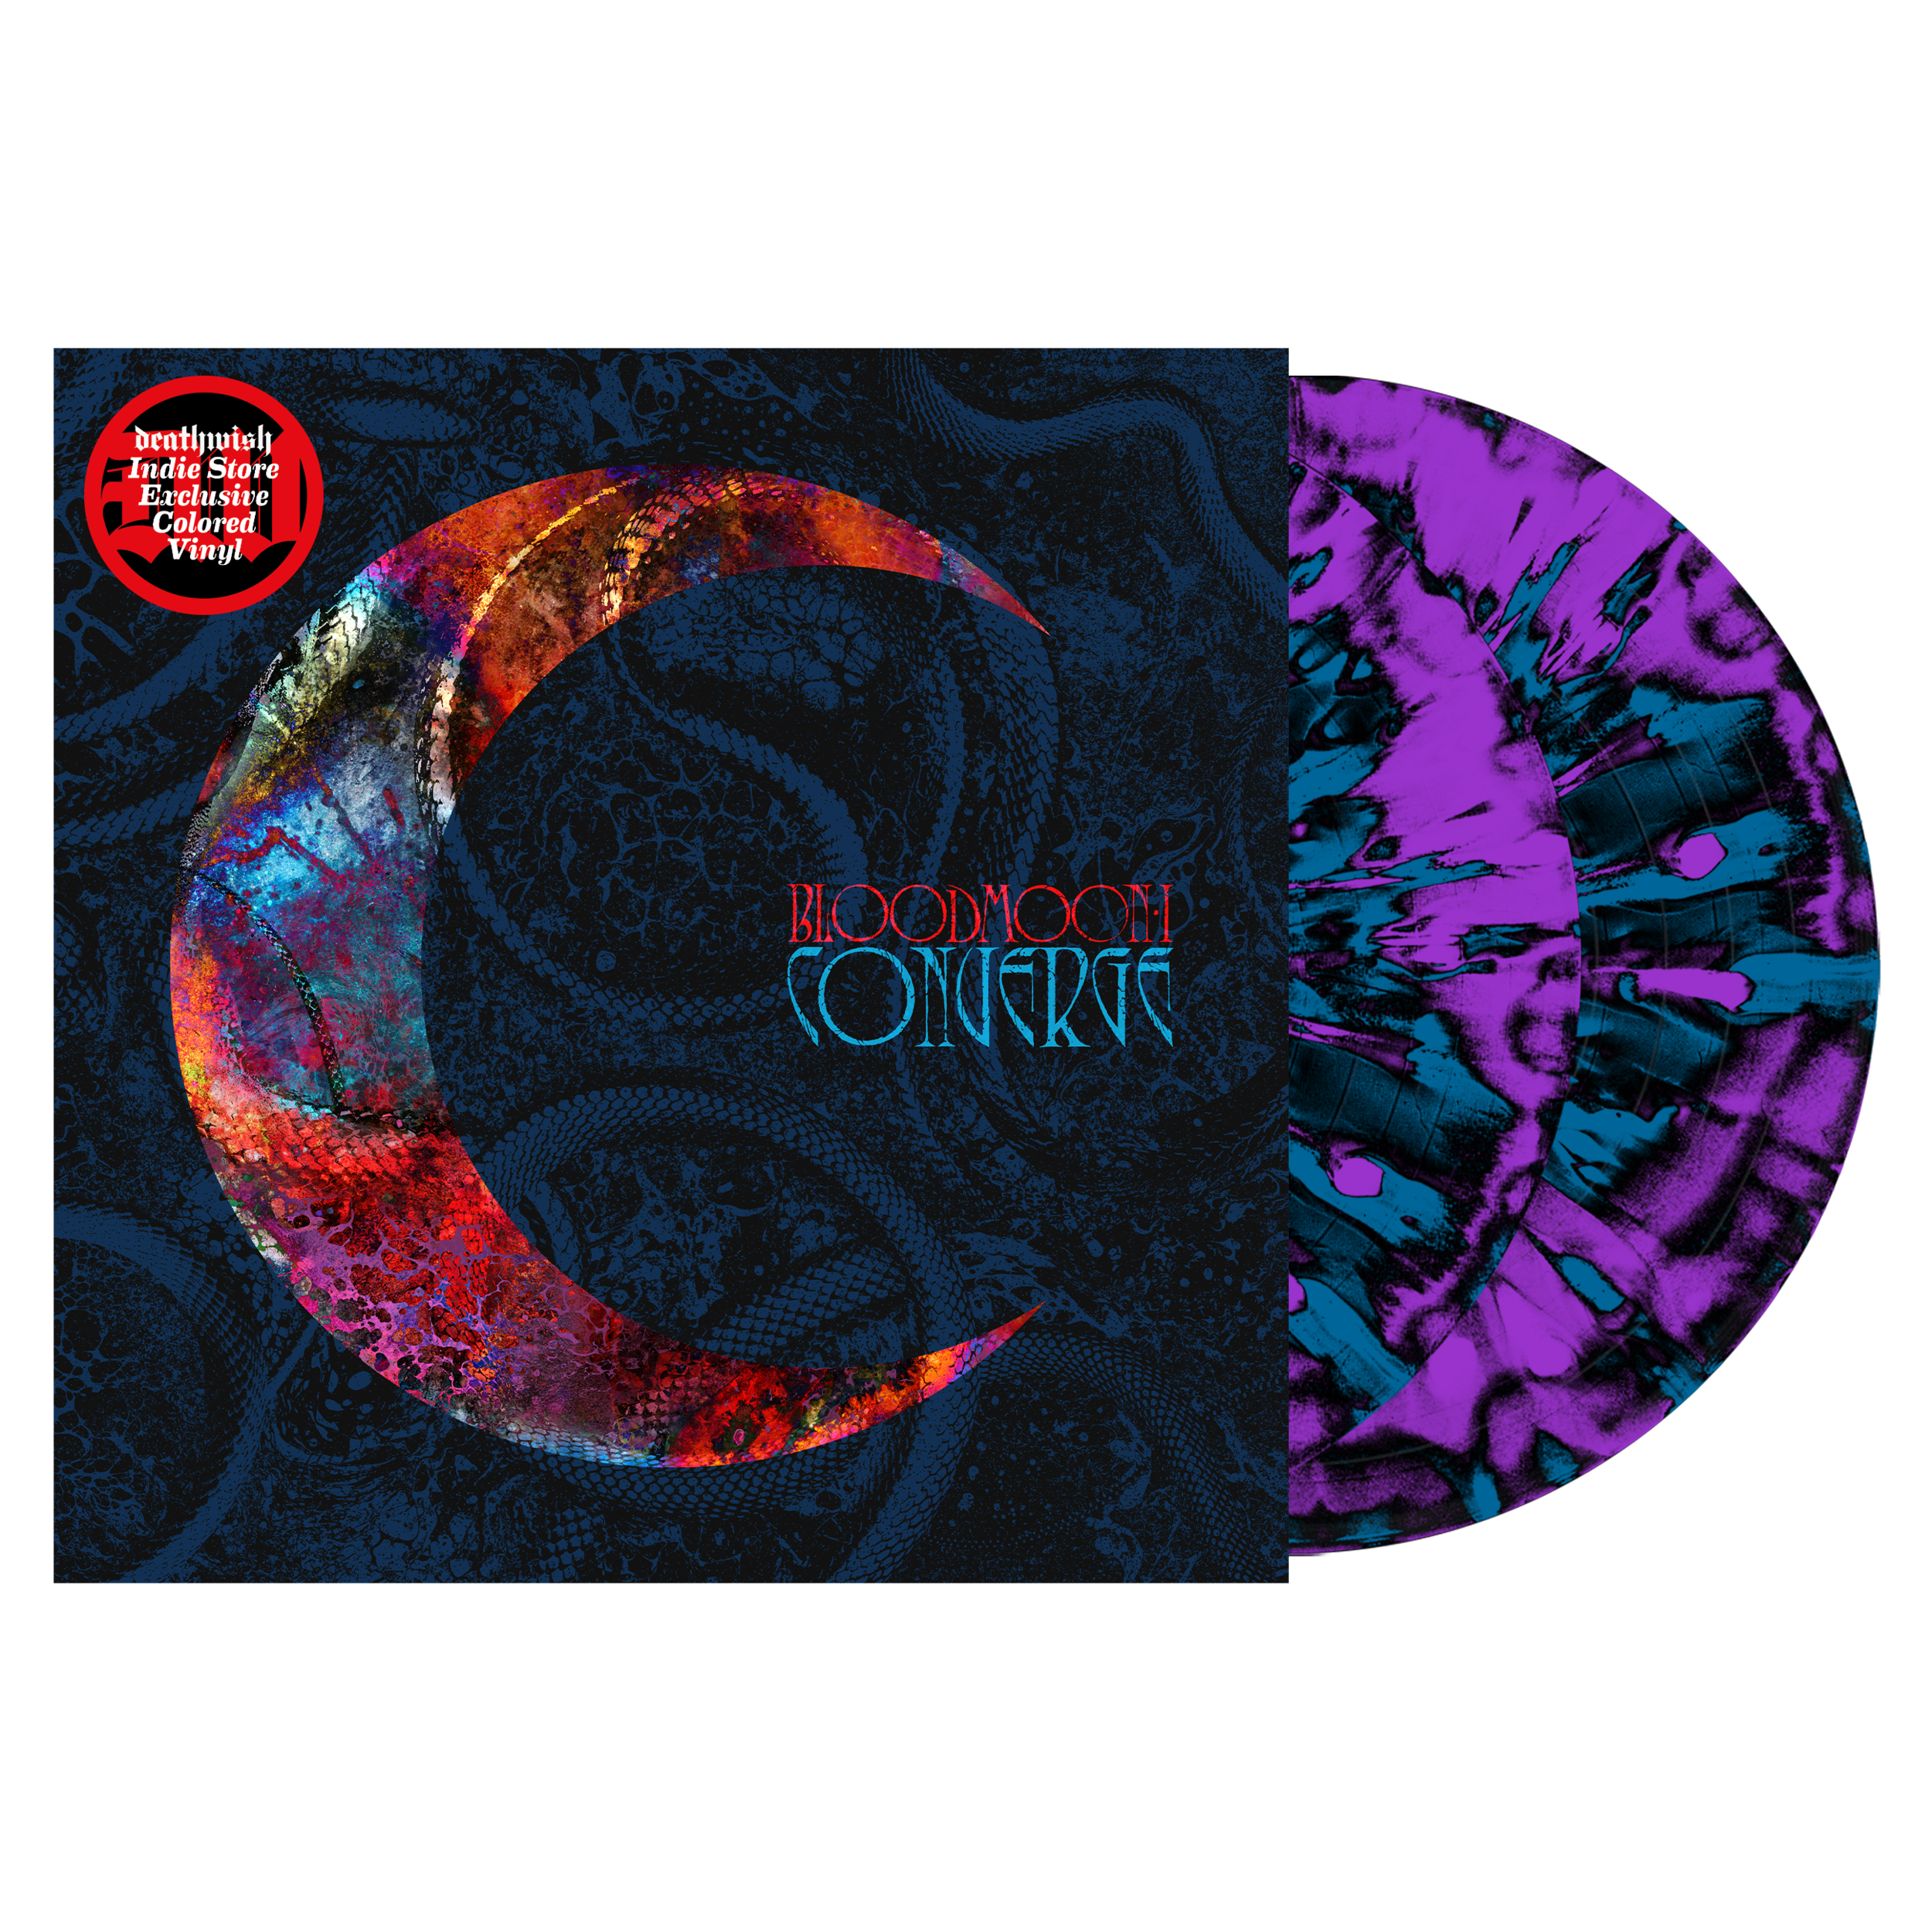 8-vinyl.converge.bloodmoon.1.indie.black-blue-purple.abstractsplatter.1.png